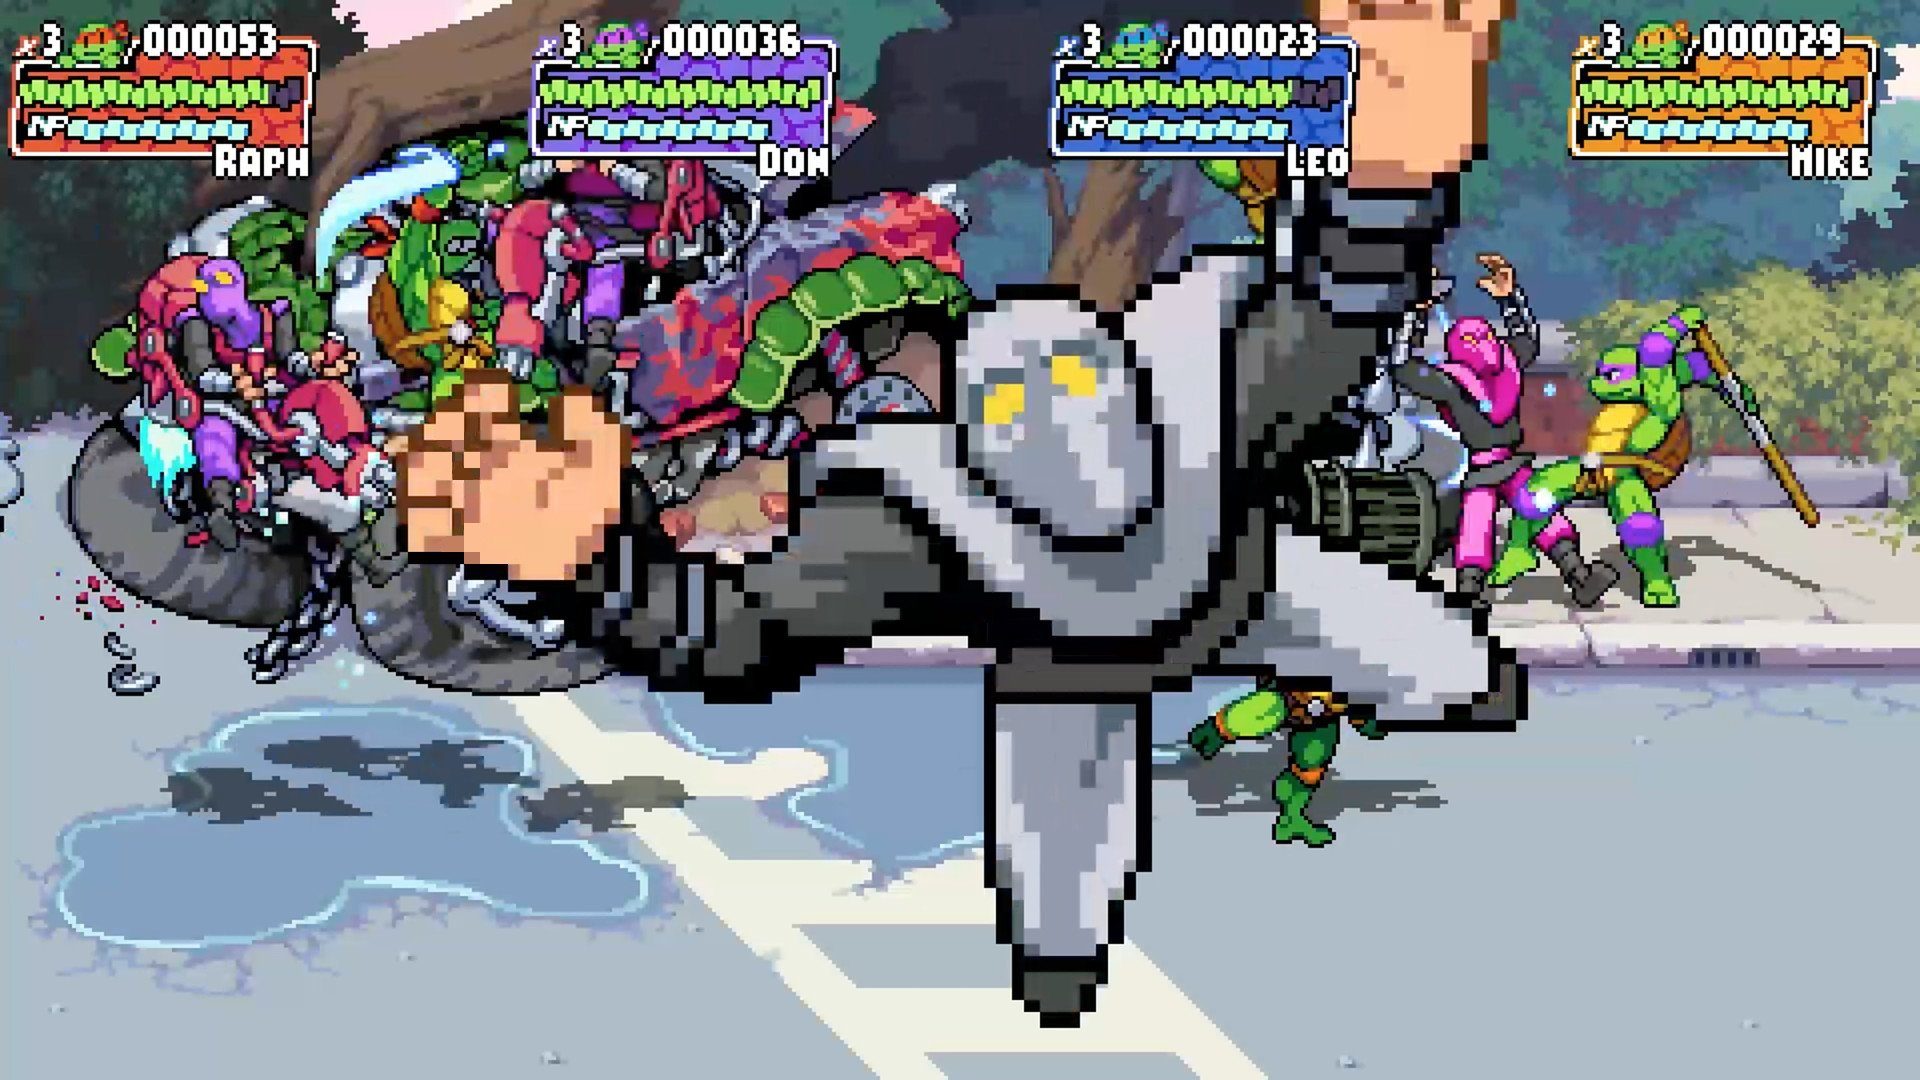 Turtles Revenge PlayStation 5 Teenage Ninja Mutant Shredder's